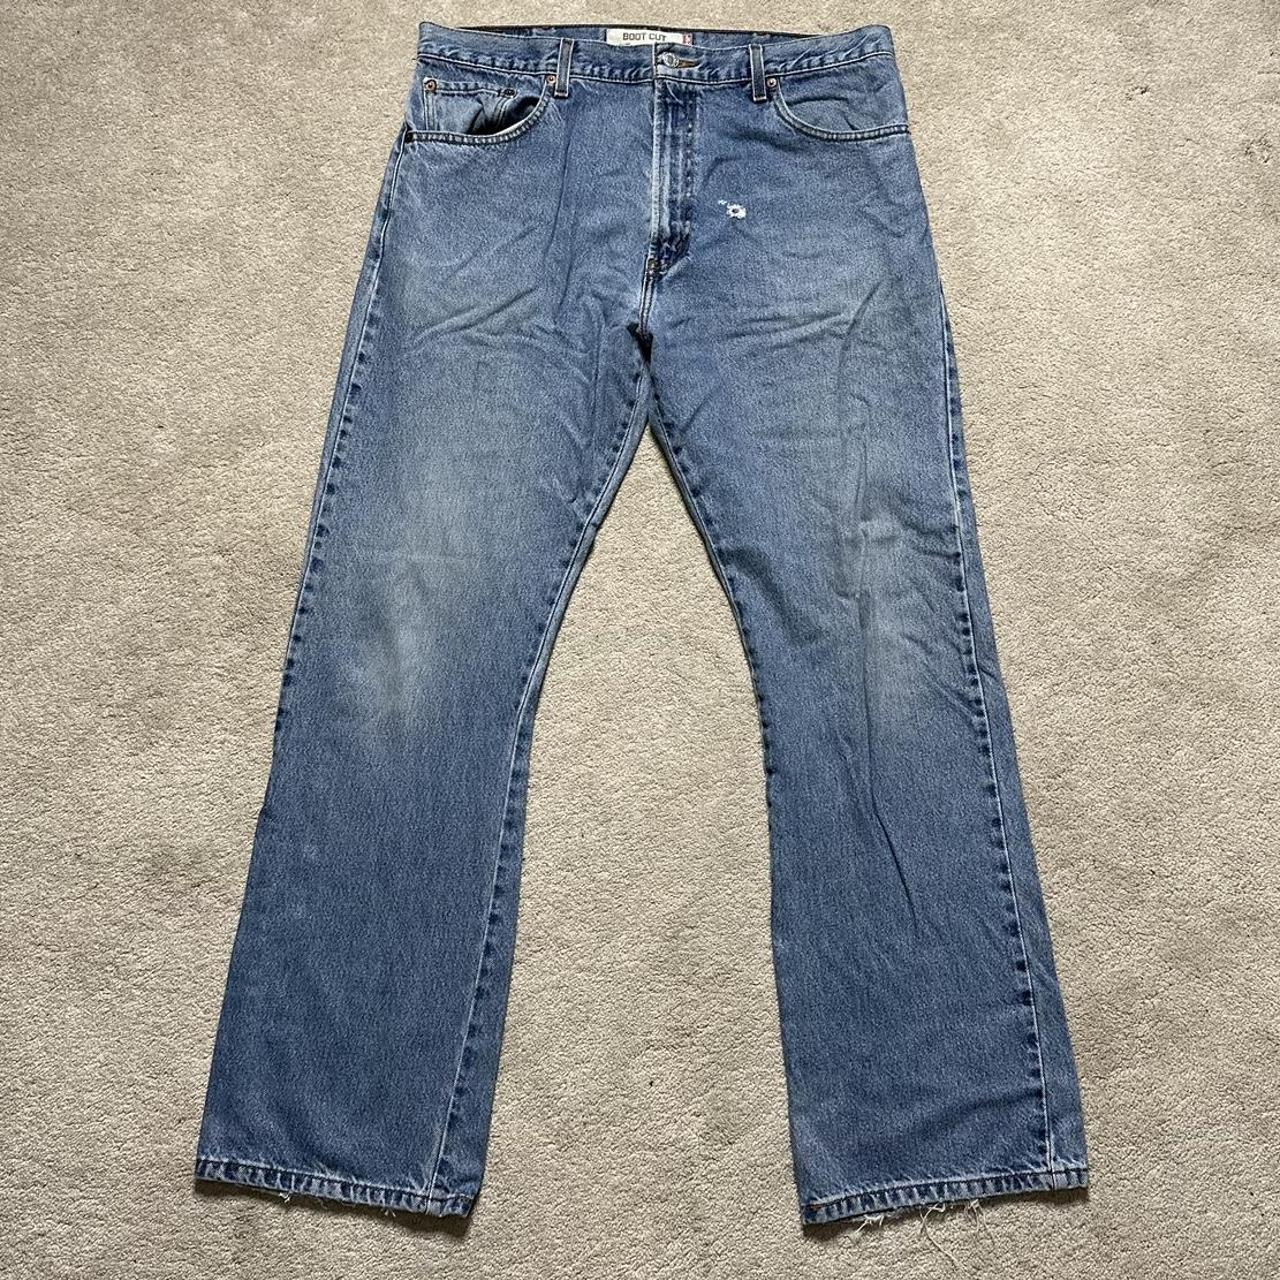 Vintage Blue 517 Levi’s Jeans 00s Casual Boot... - Depop